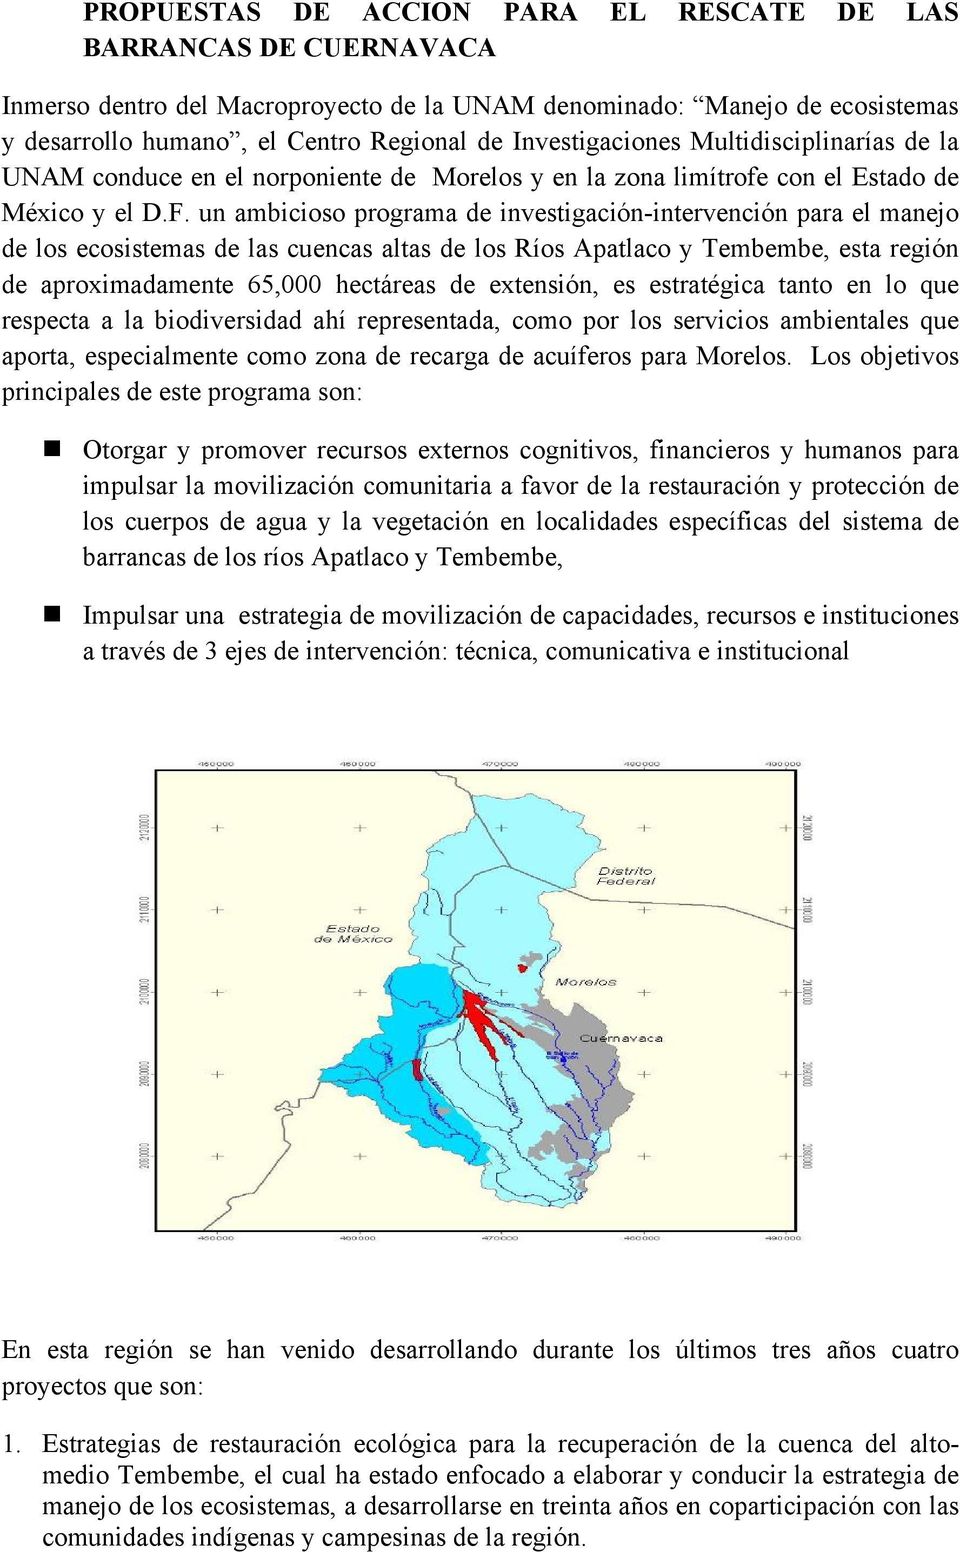 un ambicioso programa de investigación-intervención para el manejo de los ecosistemas de las cuencas altas de los Ríos Apatlaco y Tembembe, esta región de aproximadamente 65,000 hectáreas de